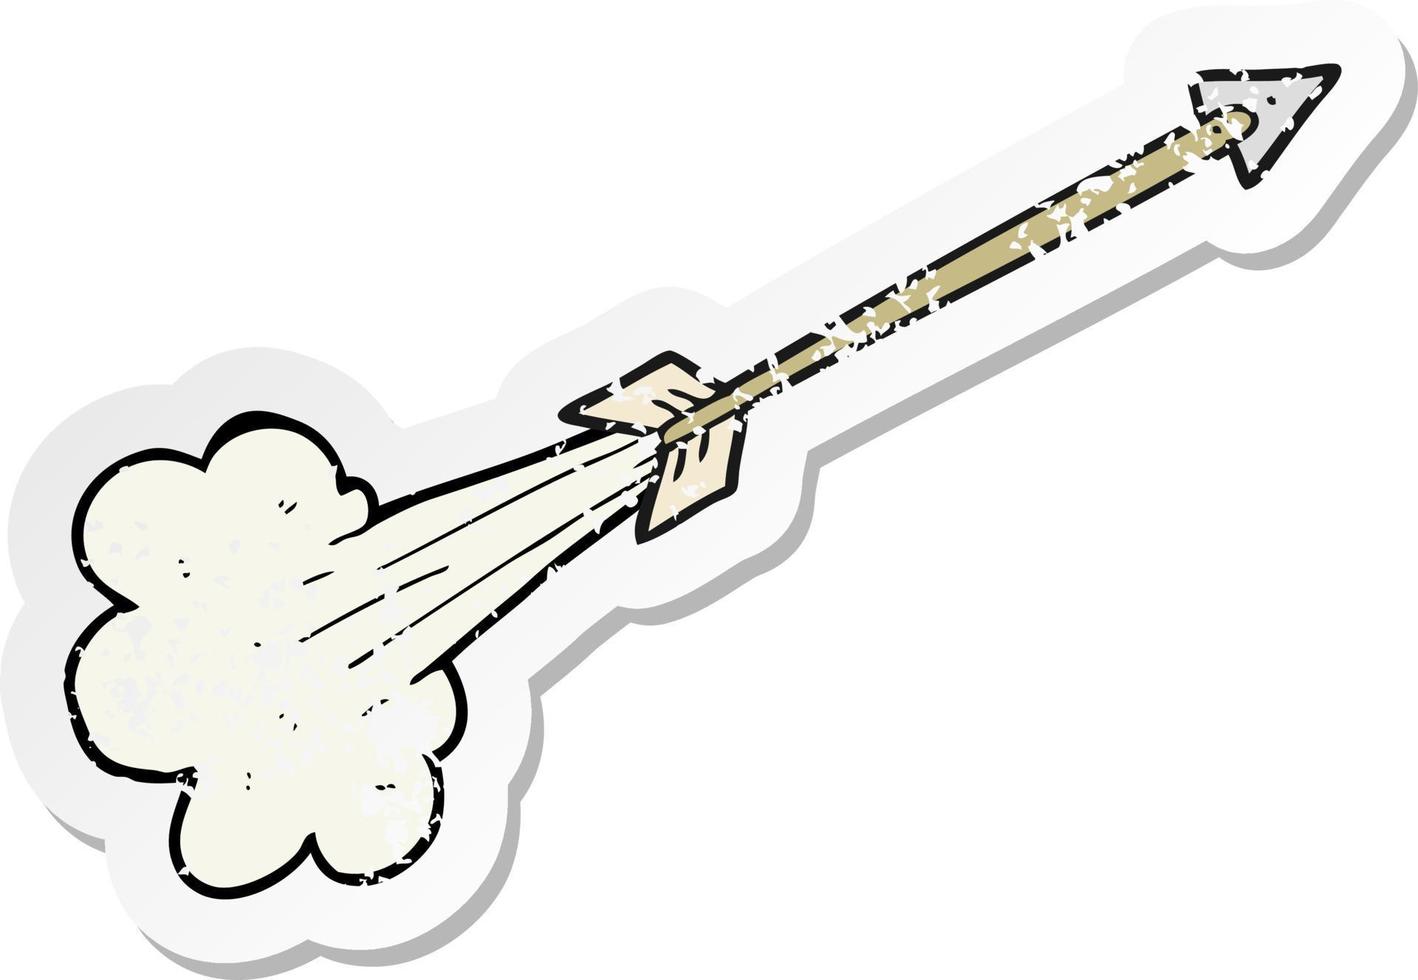 pegatina retro angustiada de una flecha voladora de dibujos animados vector